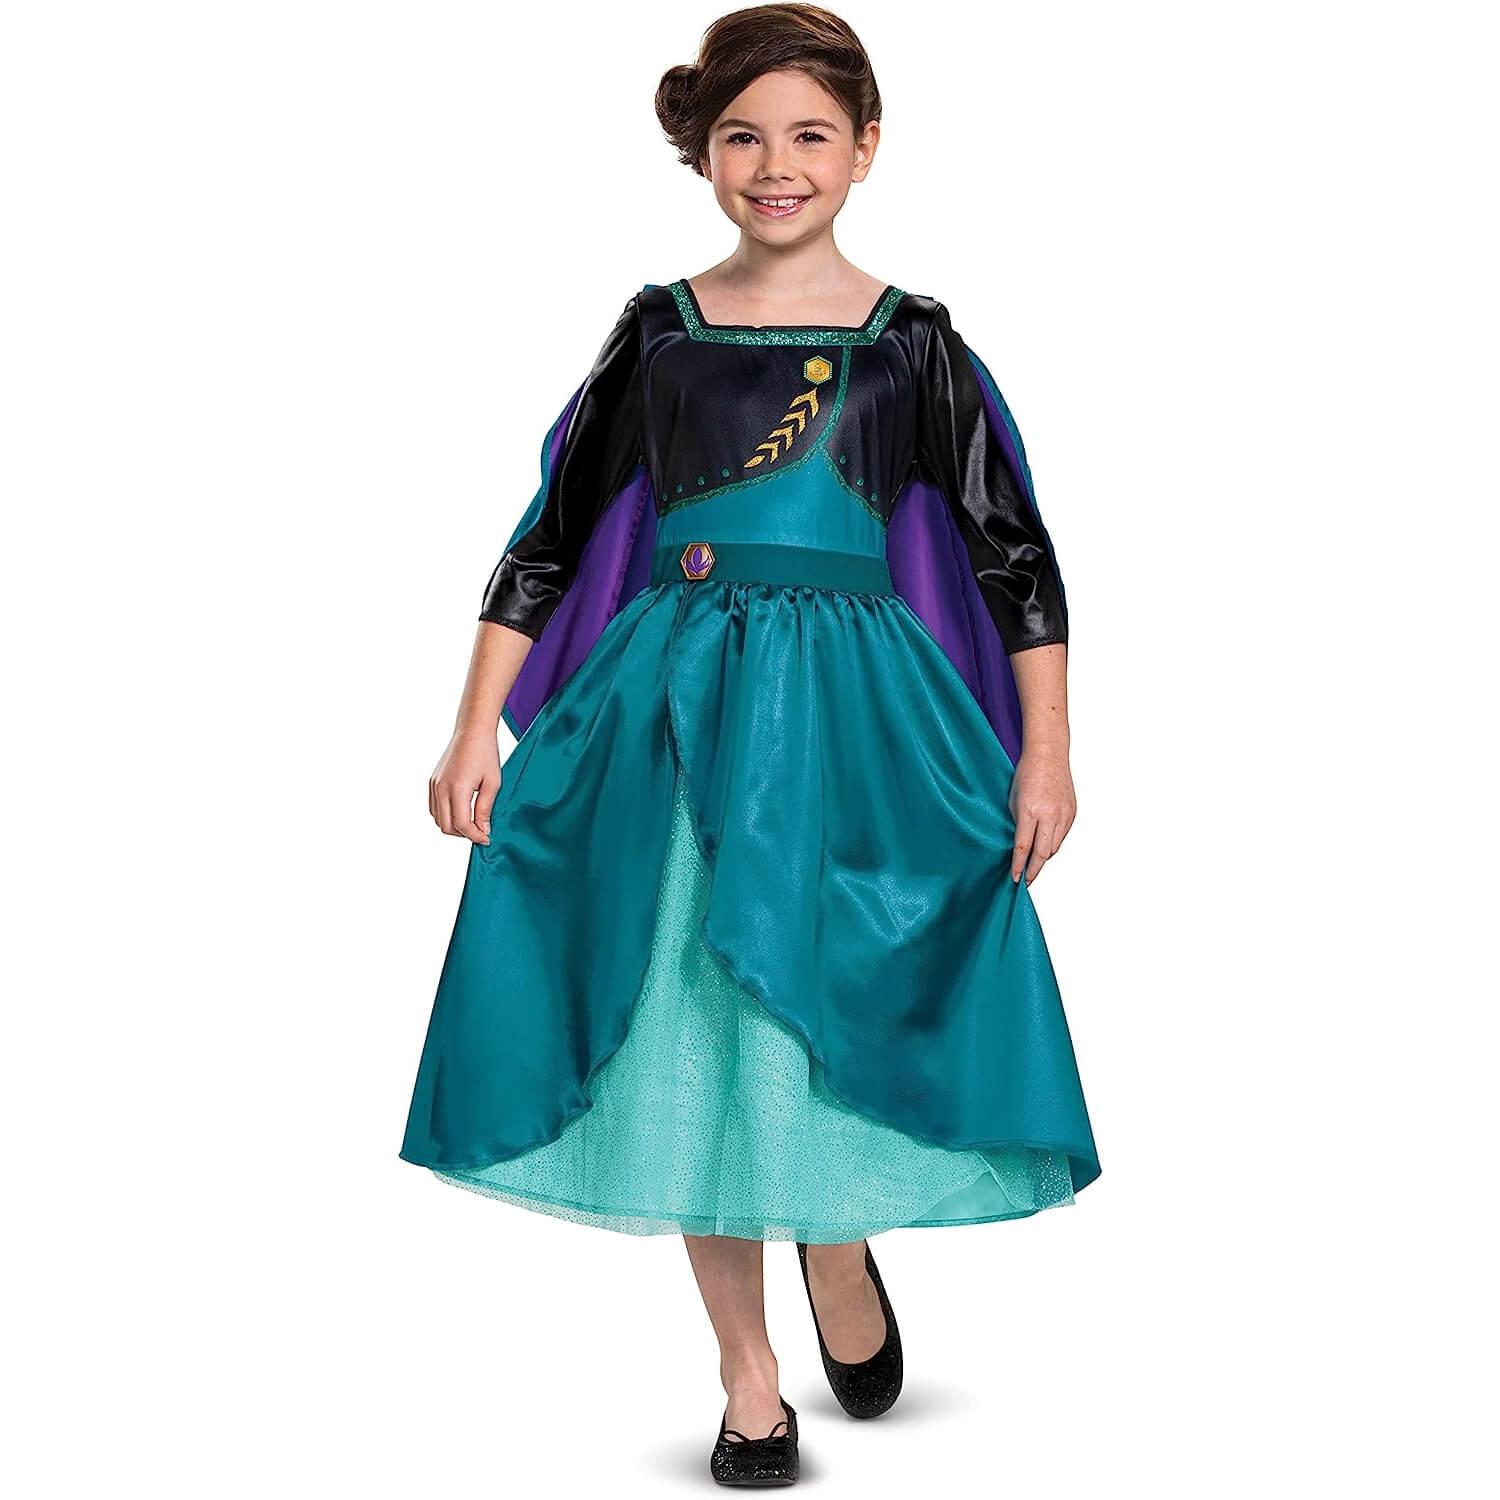 Déguisement Elsa + Accessoires Frozen La Reine des Neiges Disney 7-8 ans -  Déguisement enfant